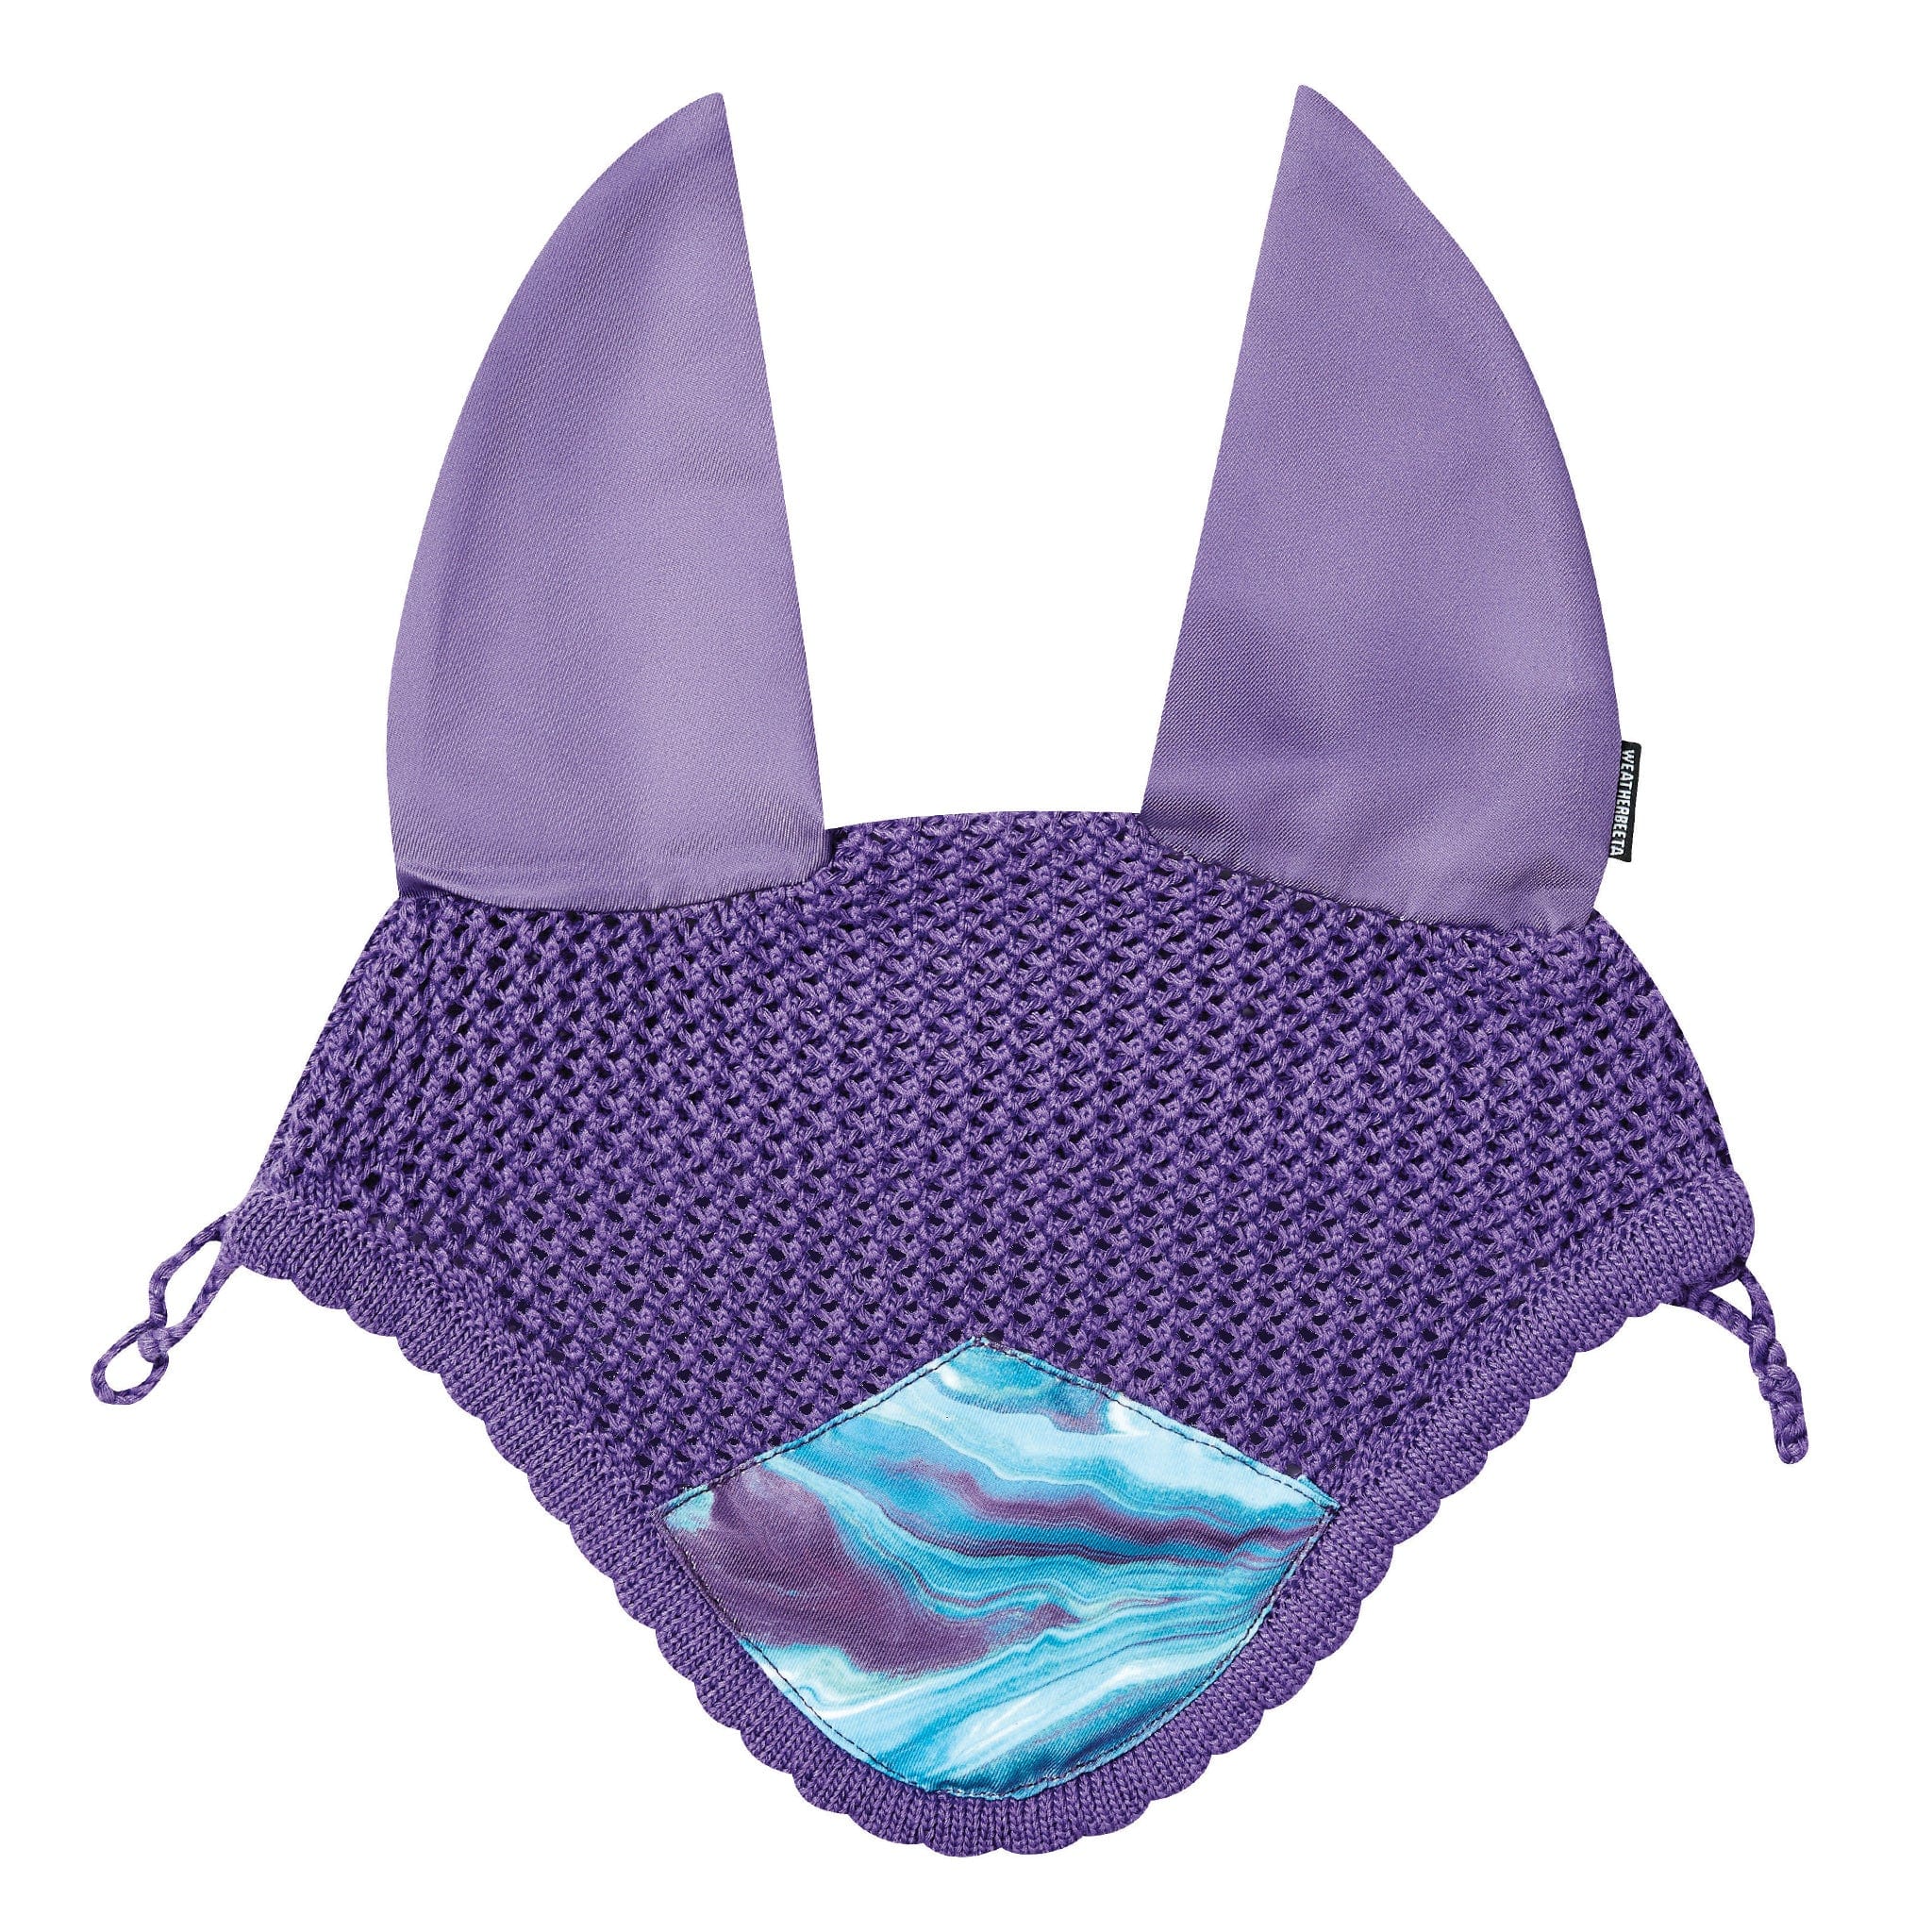 Weatherbeeta Prime Marble Ear Bonnet Purple Swirl 1008703000